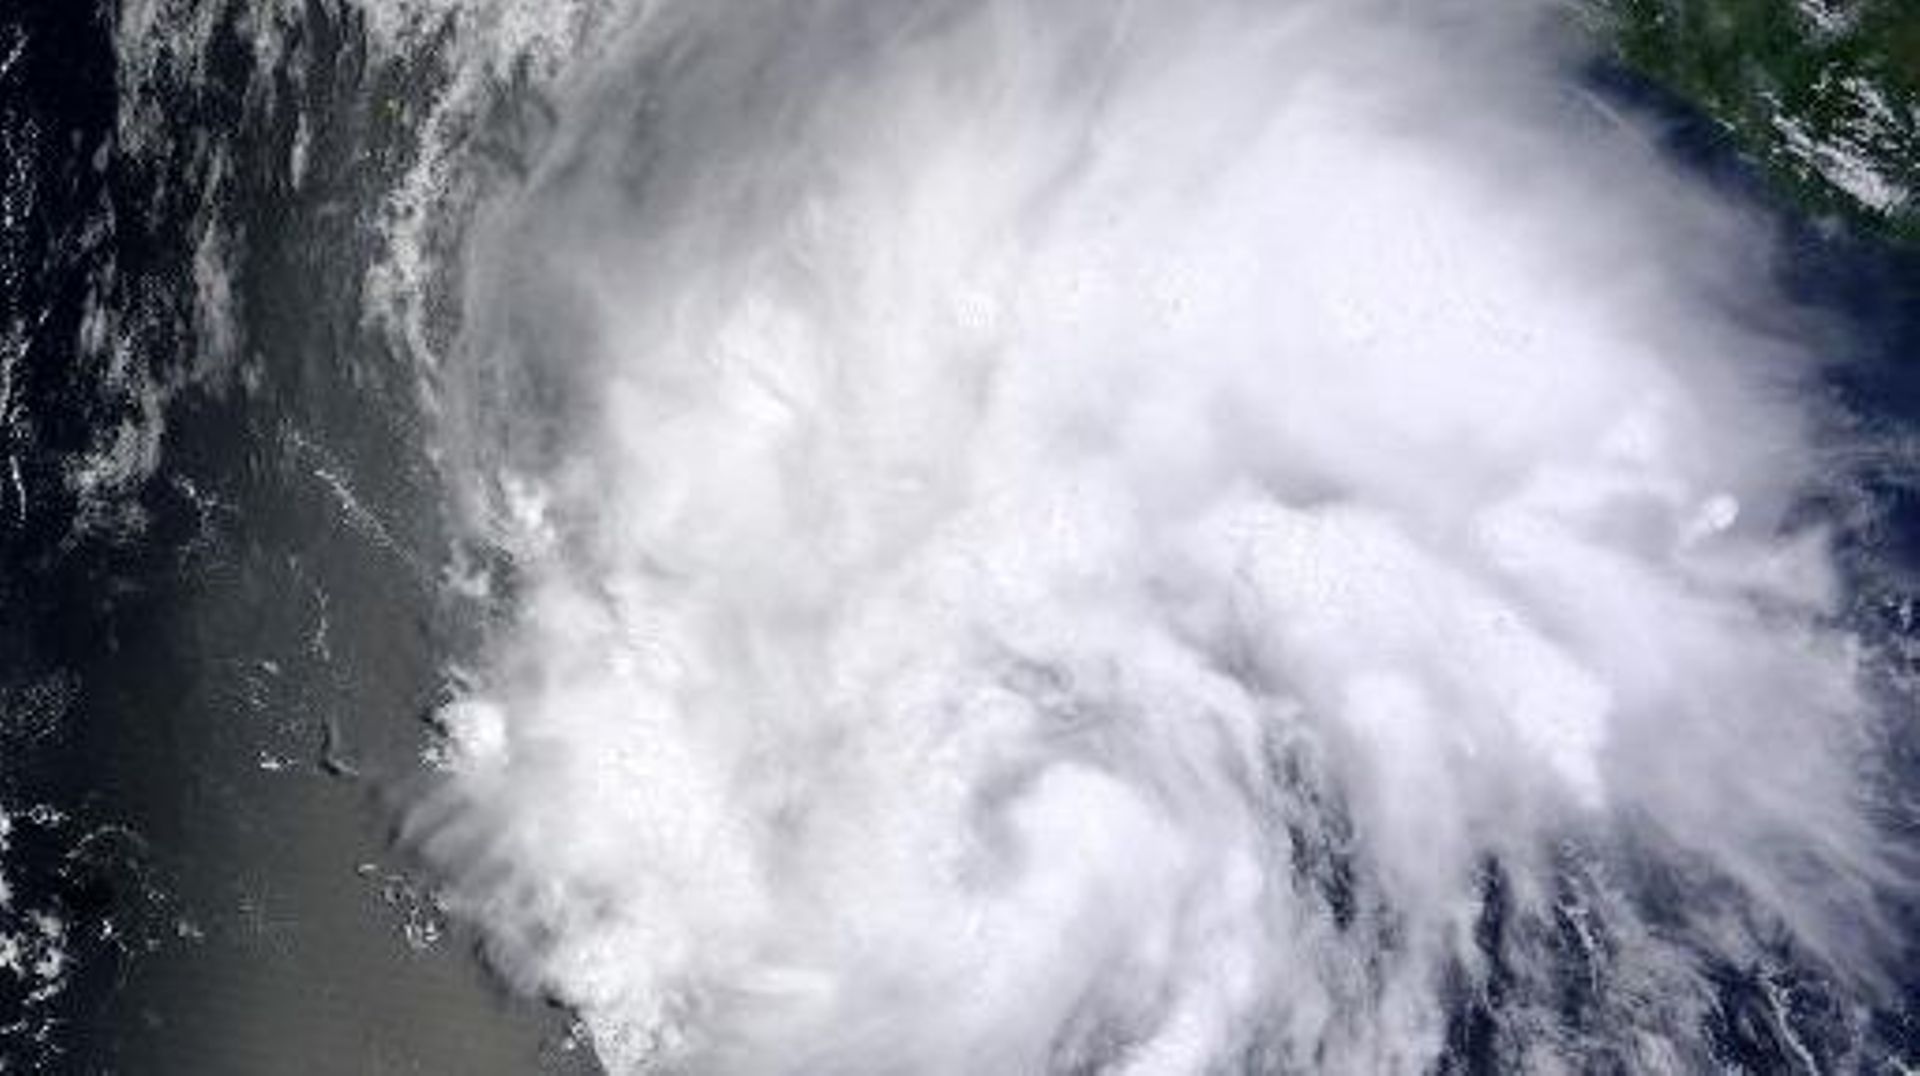 Photographie fournie par la Nasa le 26 juillet 2014 de l'ouragan Hernan qui s'est formé dimanche dans la partie orientale du Pacifique au large de la côte ouest du Mexique